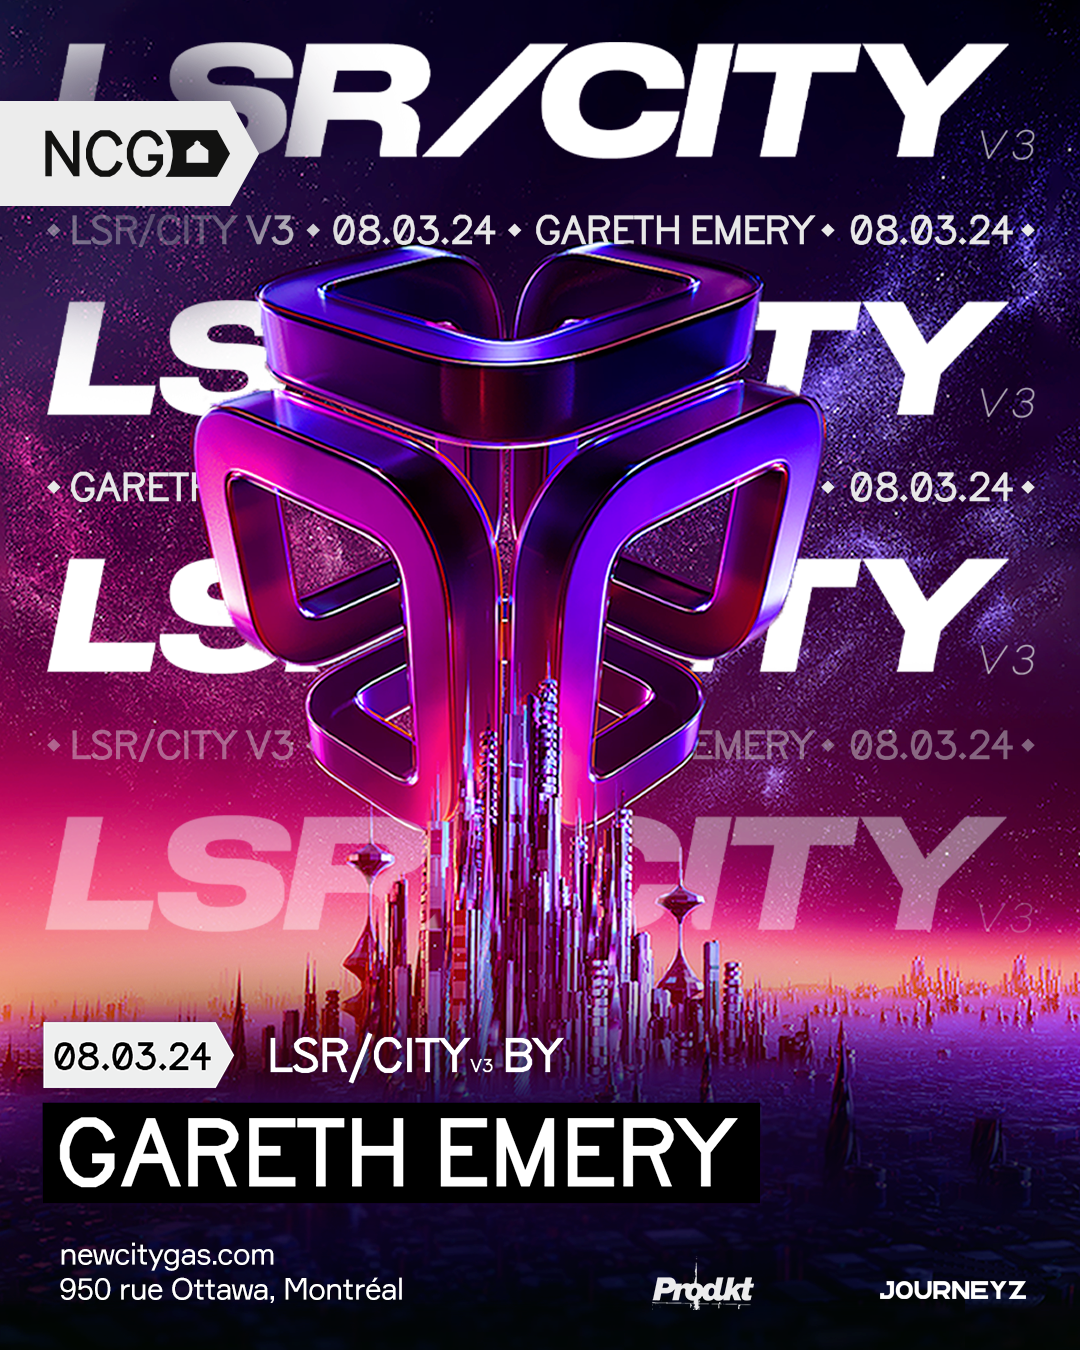 LSR/CITY V3 by Gareth Emery - フライヤー裏